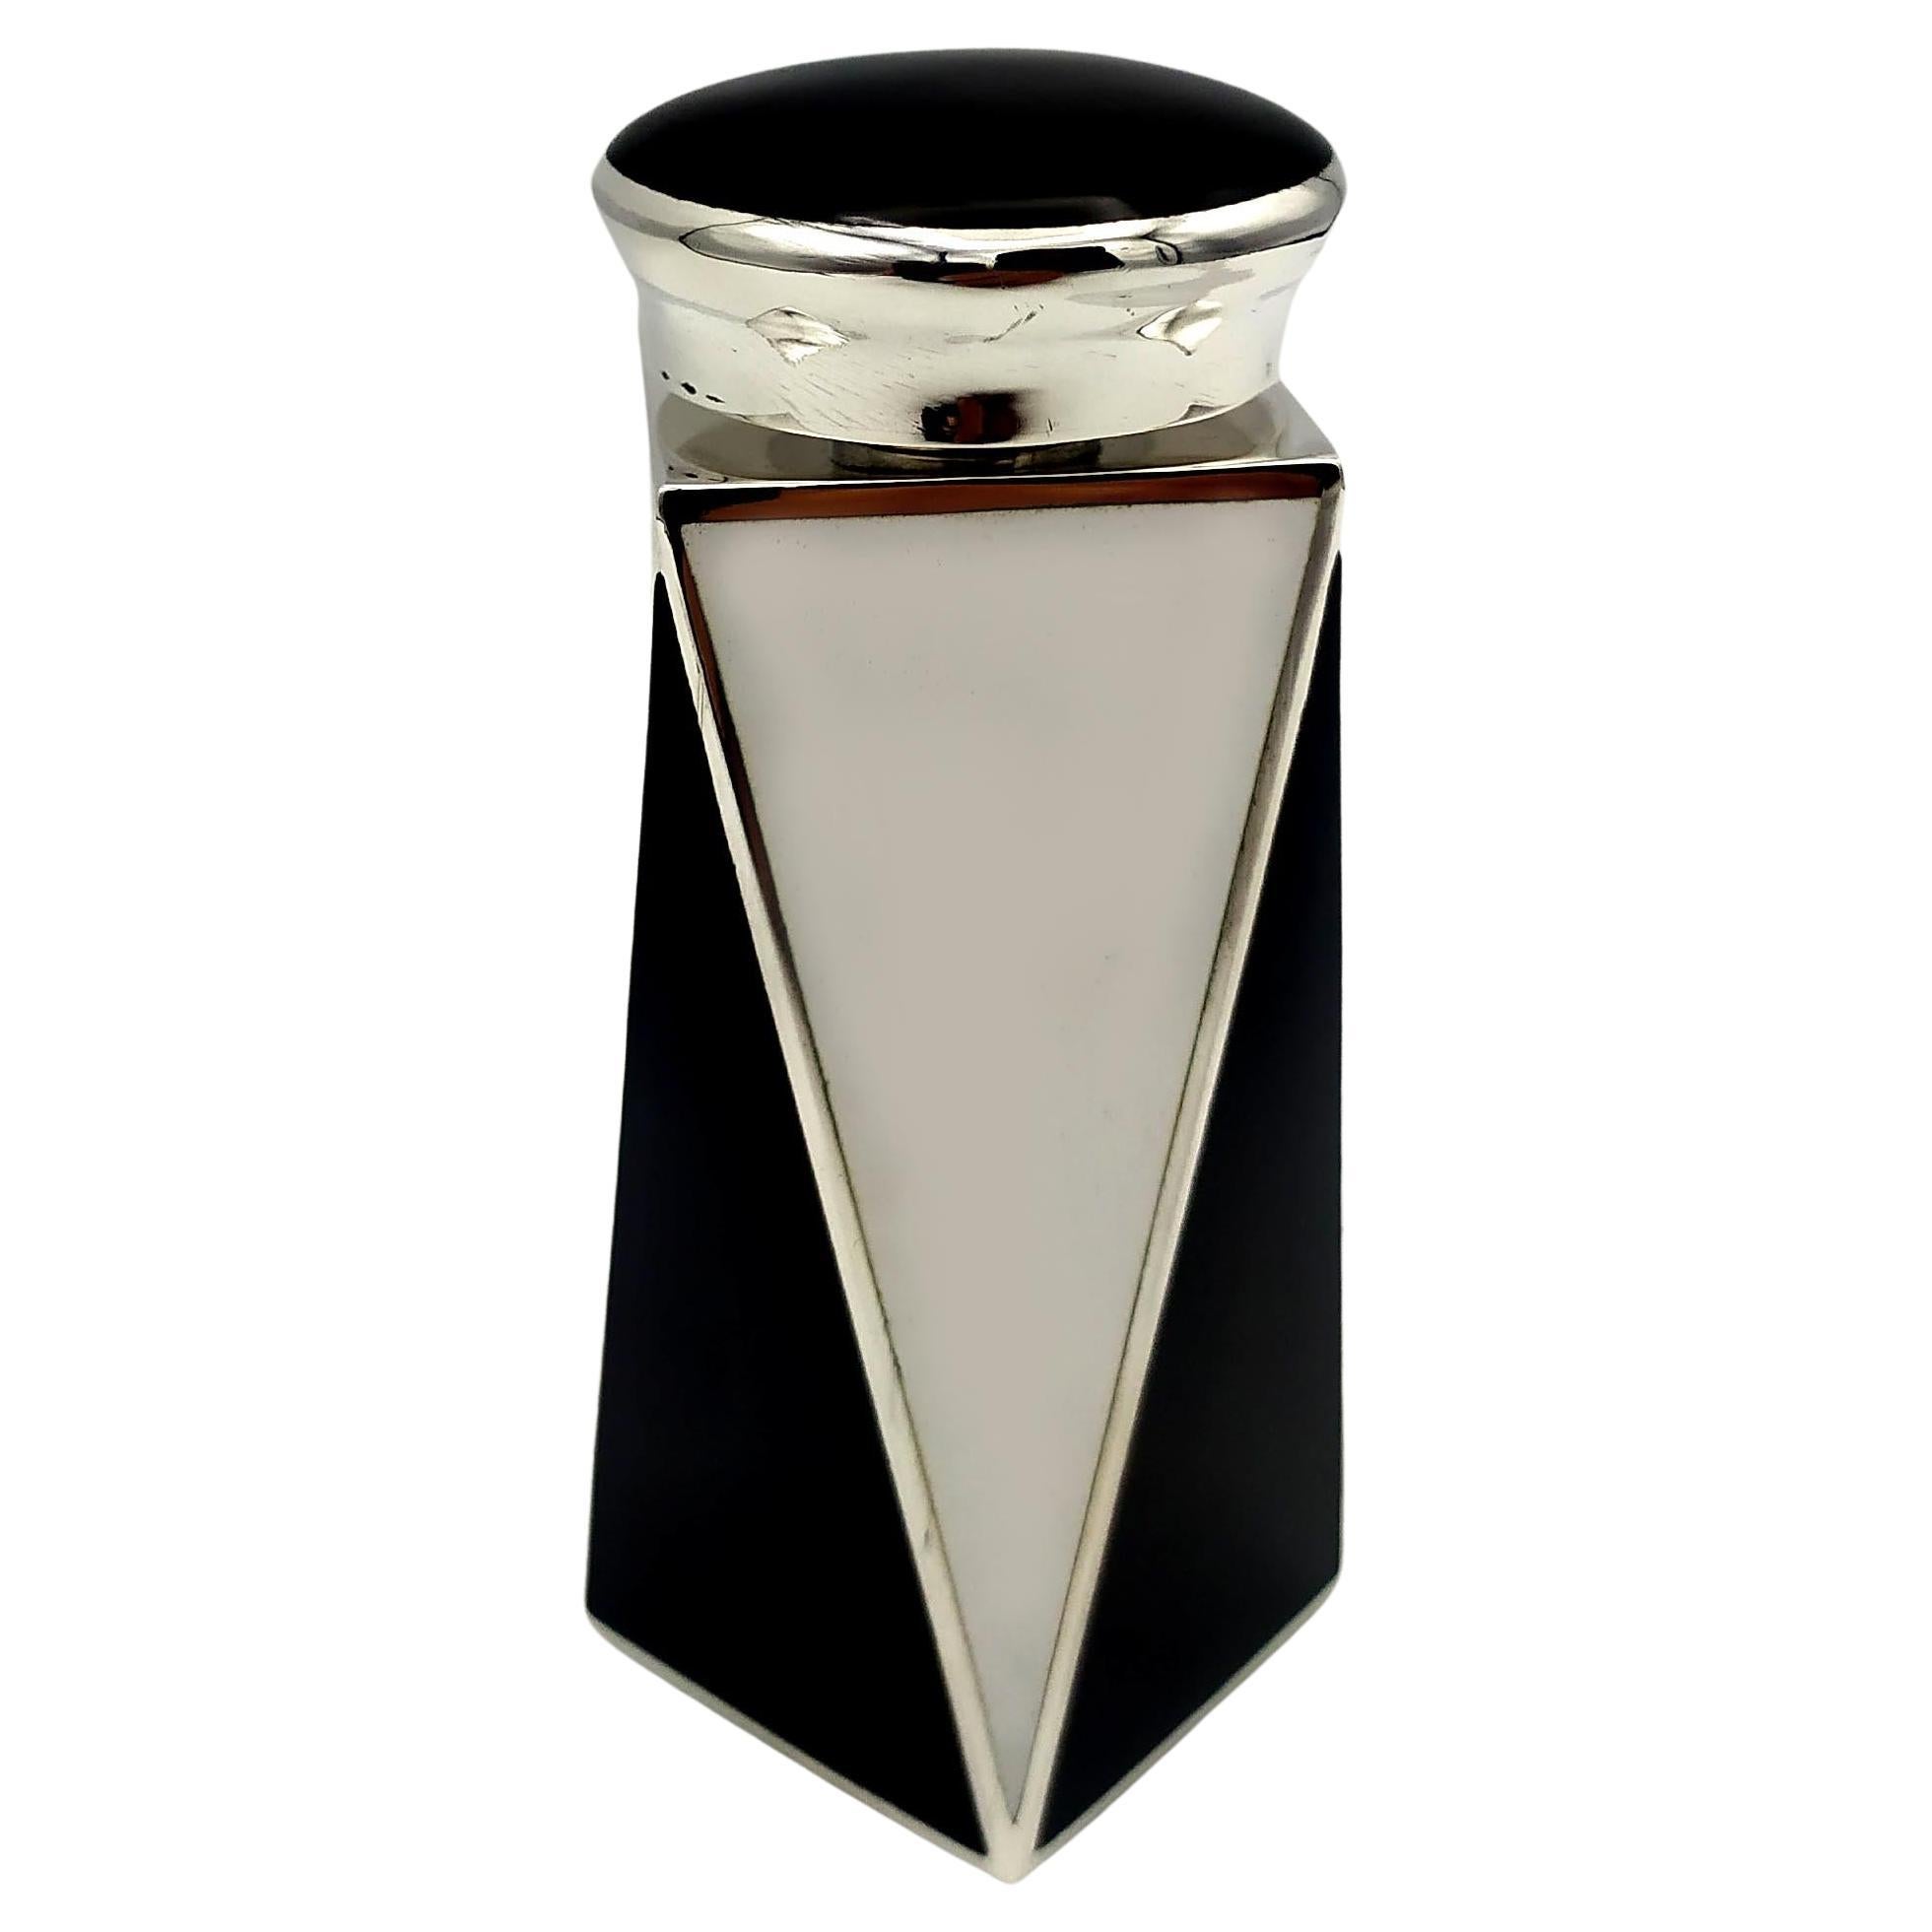 Perfume Holder Black and White Art Deco style Squared base 925 Salimbeni